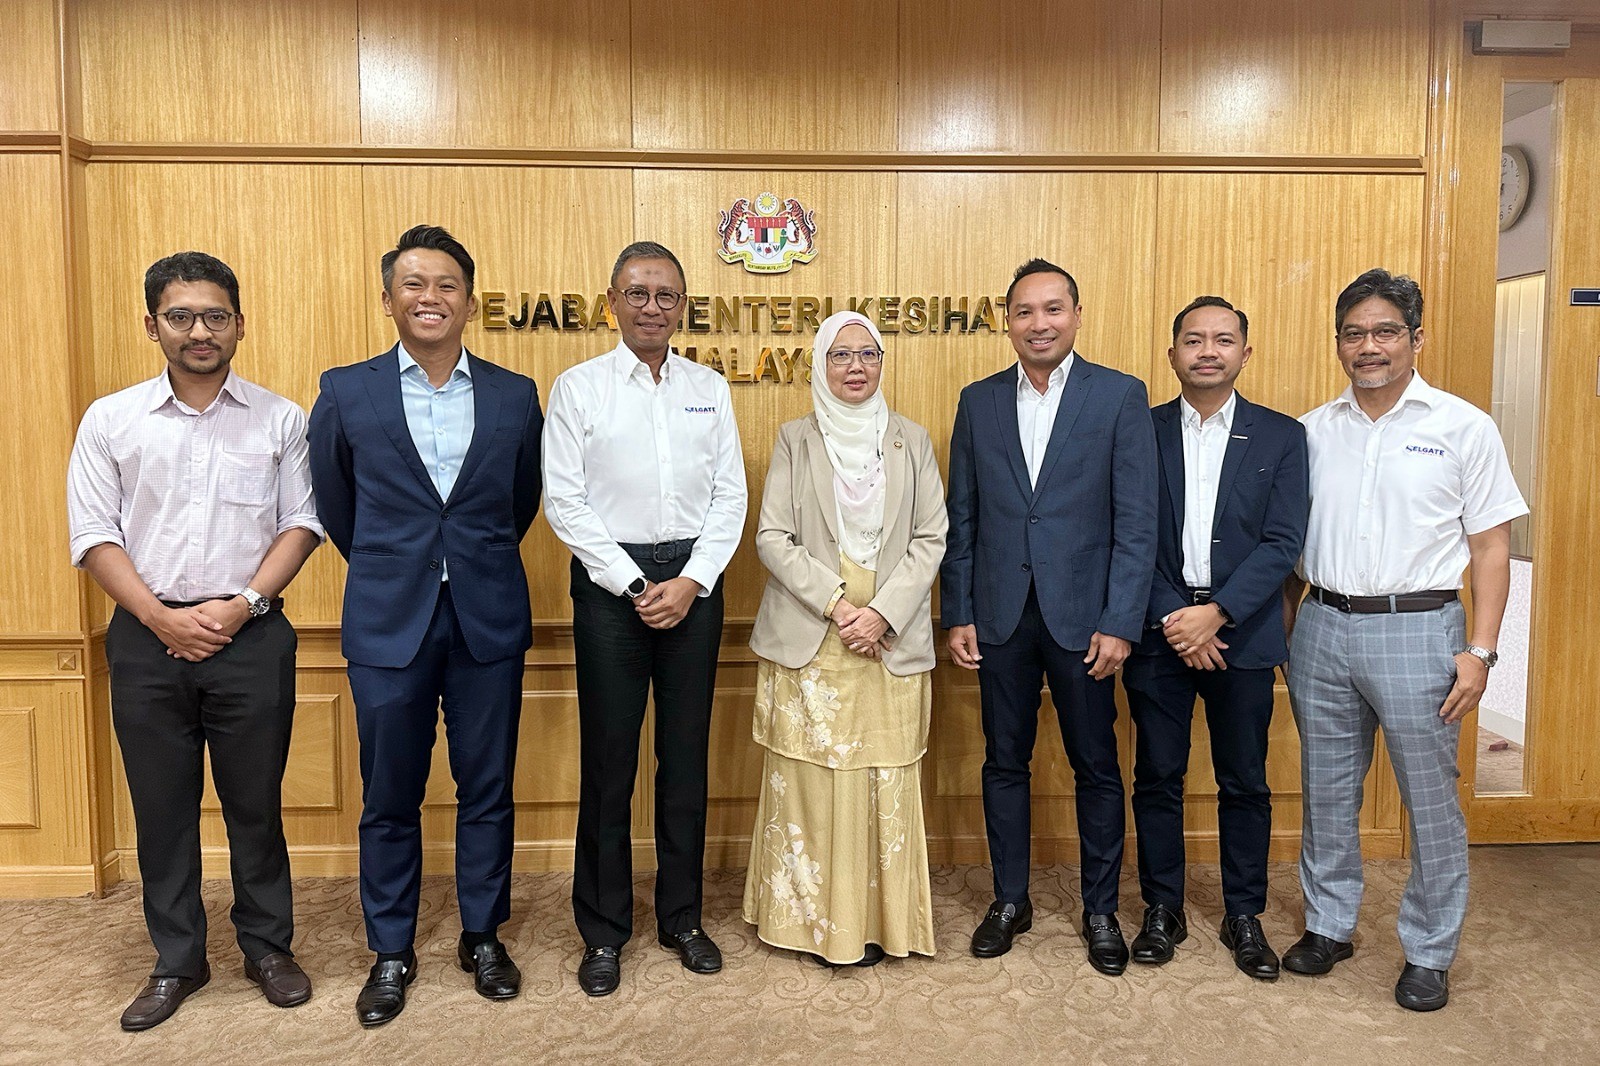 Kunjungan Hormat Ke Atas YB Menteri Kesihatan Malaysia